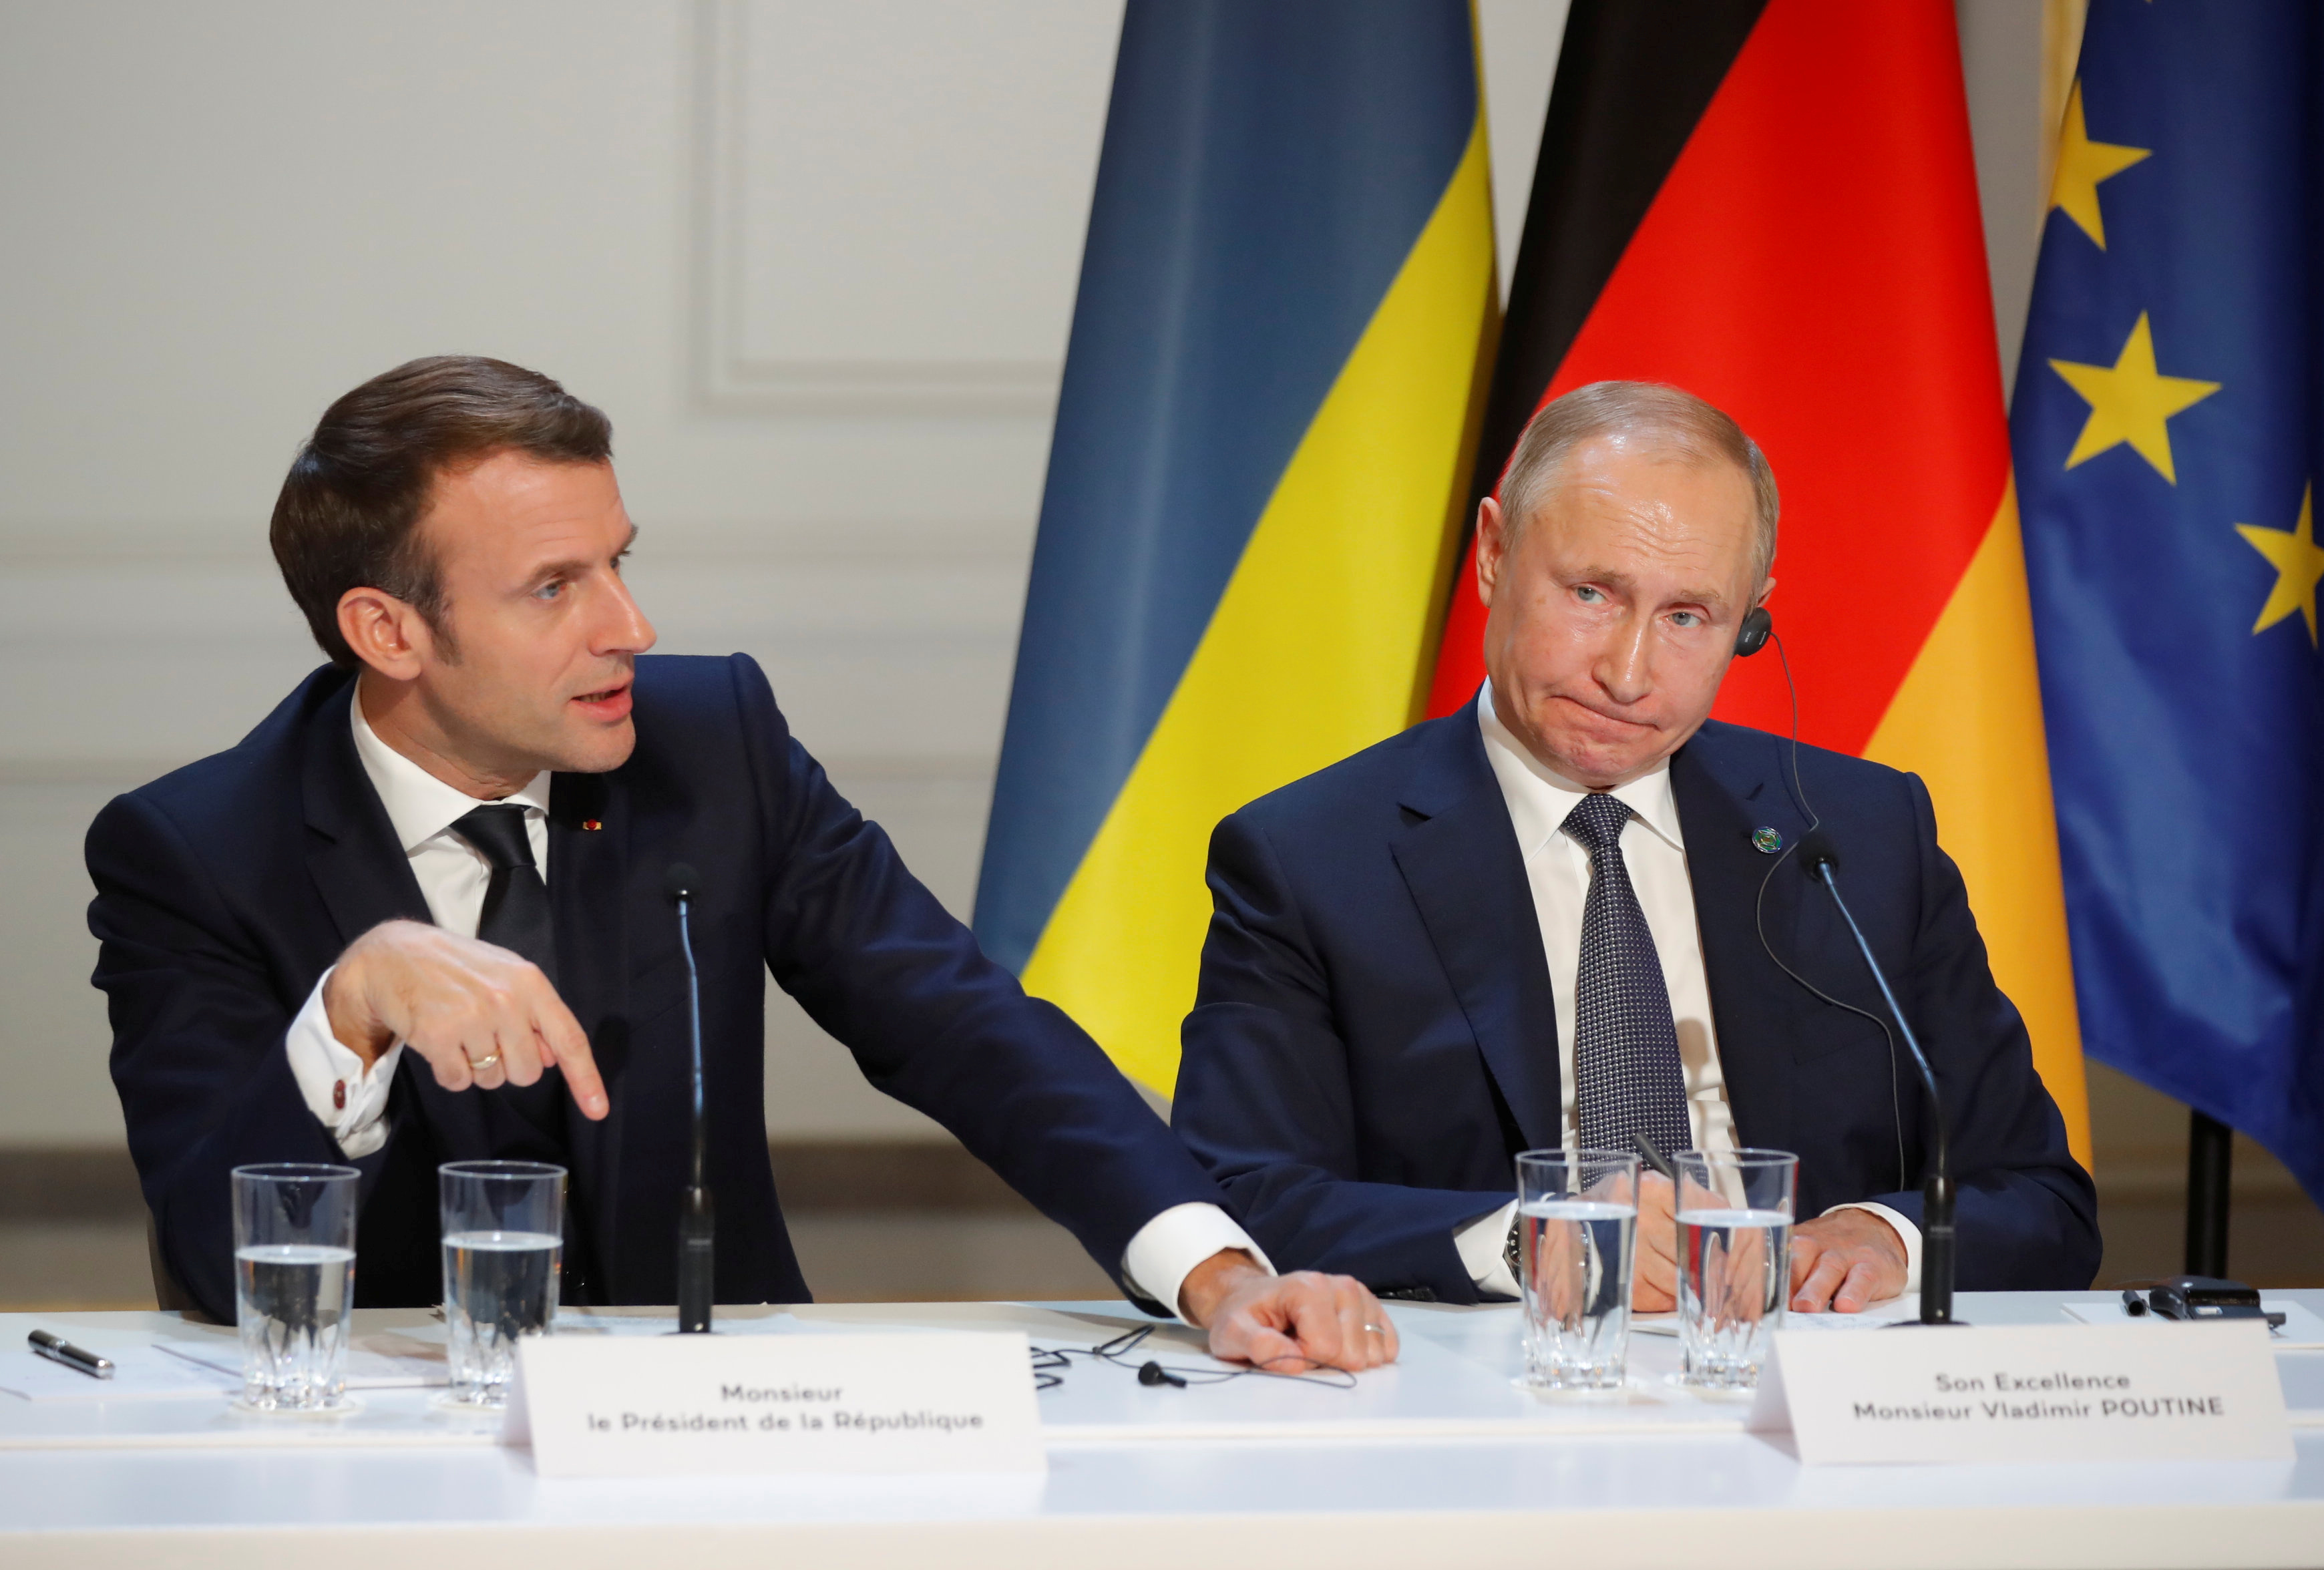 Emmanuel Macron, presidente de Francia: “Rusia ha iniciado de facto una forma de vasallaje hacia China”